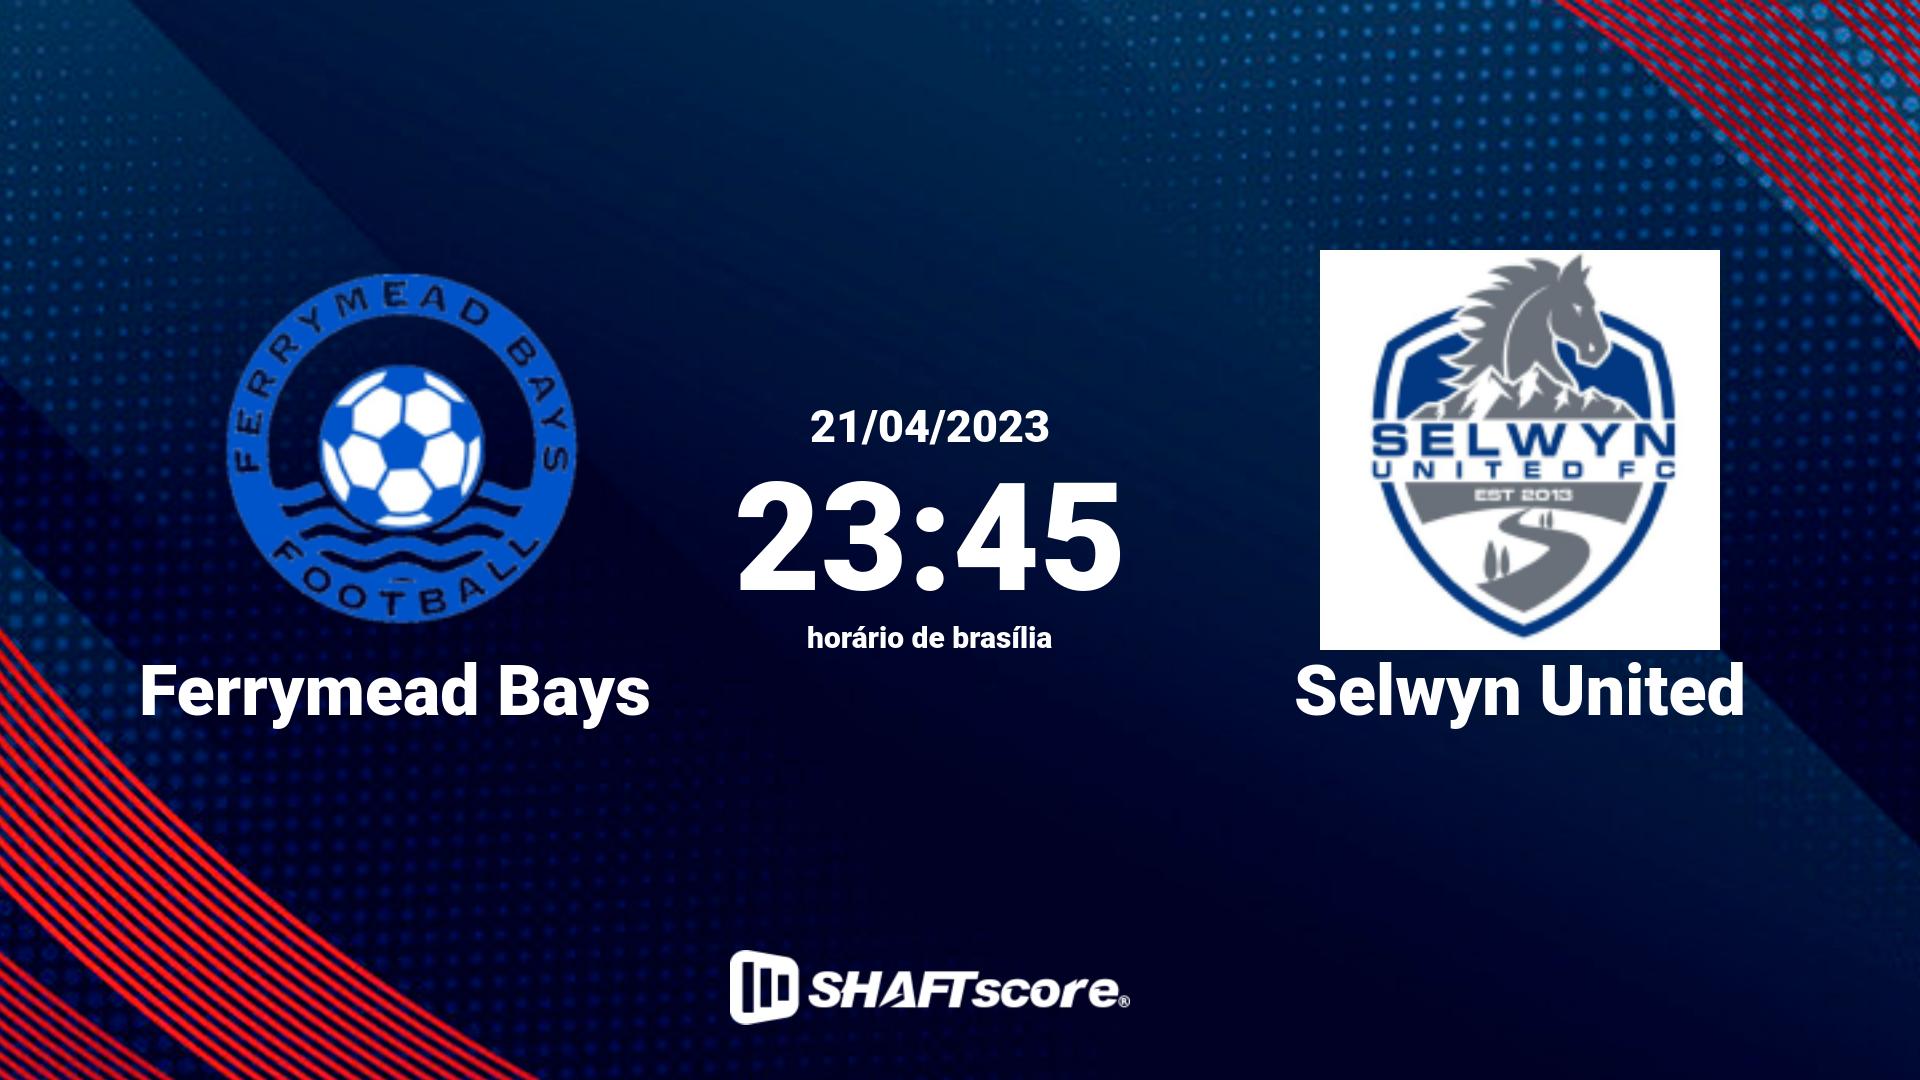 Estatísticas do jogo Ferrymead Bays vs Selwyn United 21.04 23:45